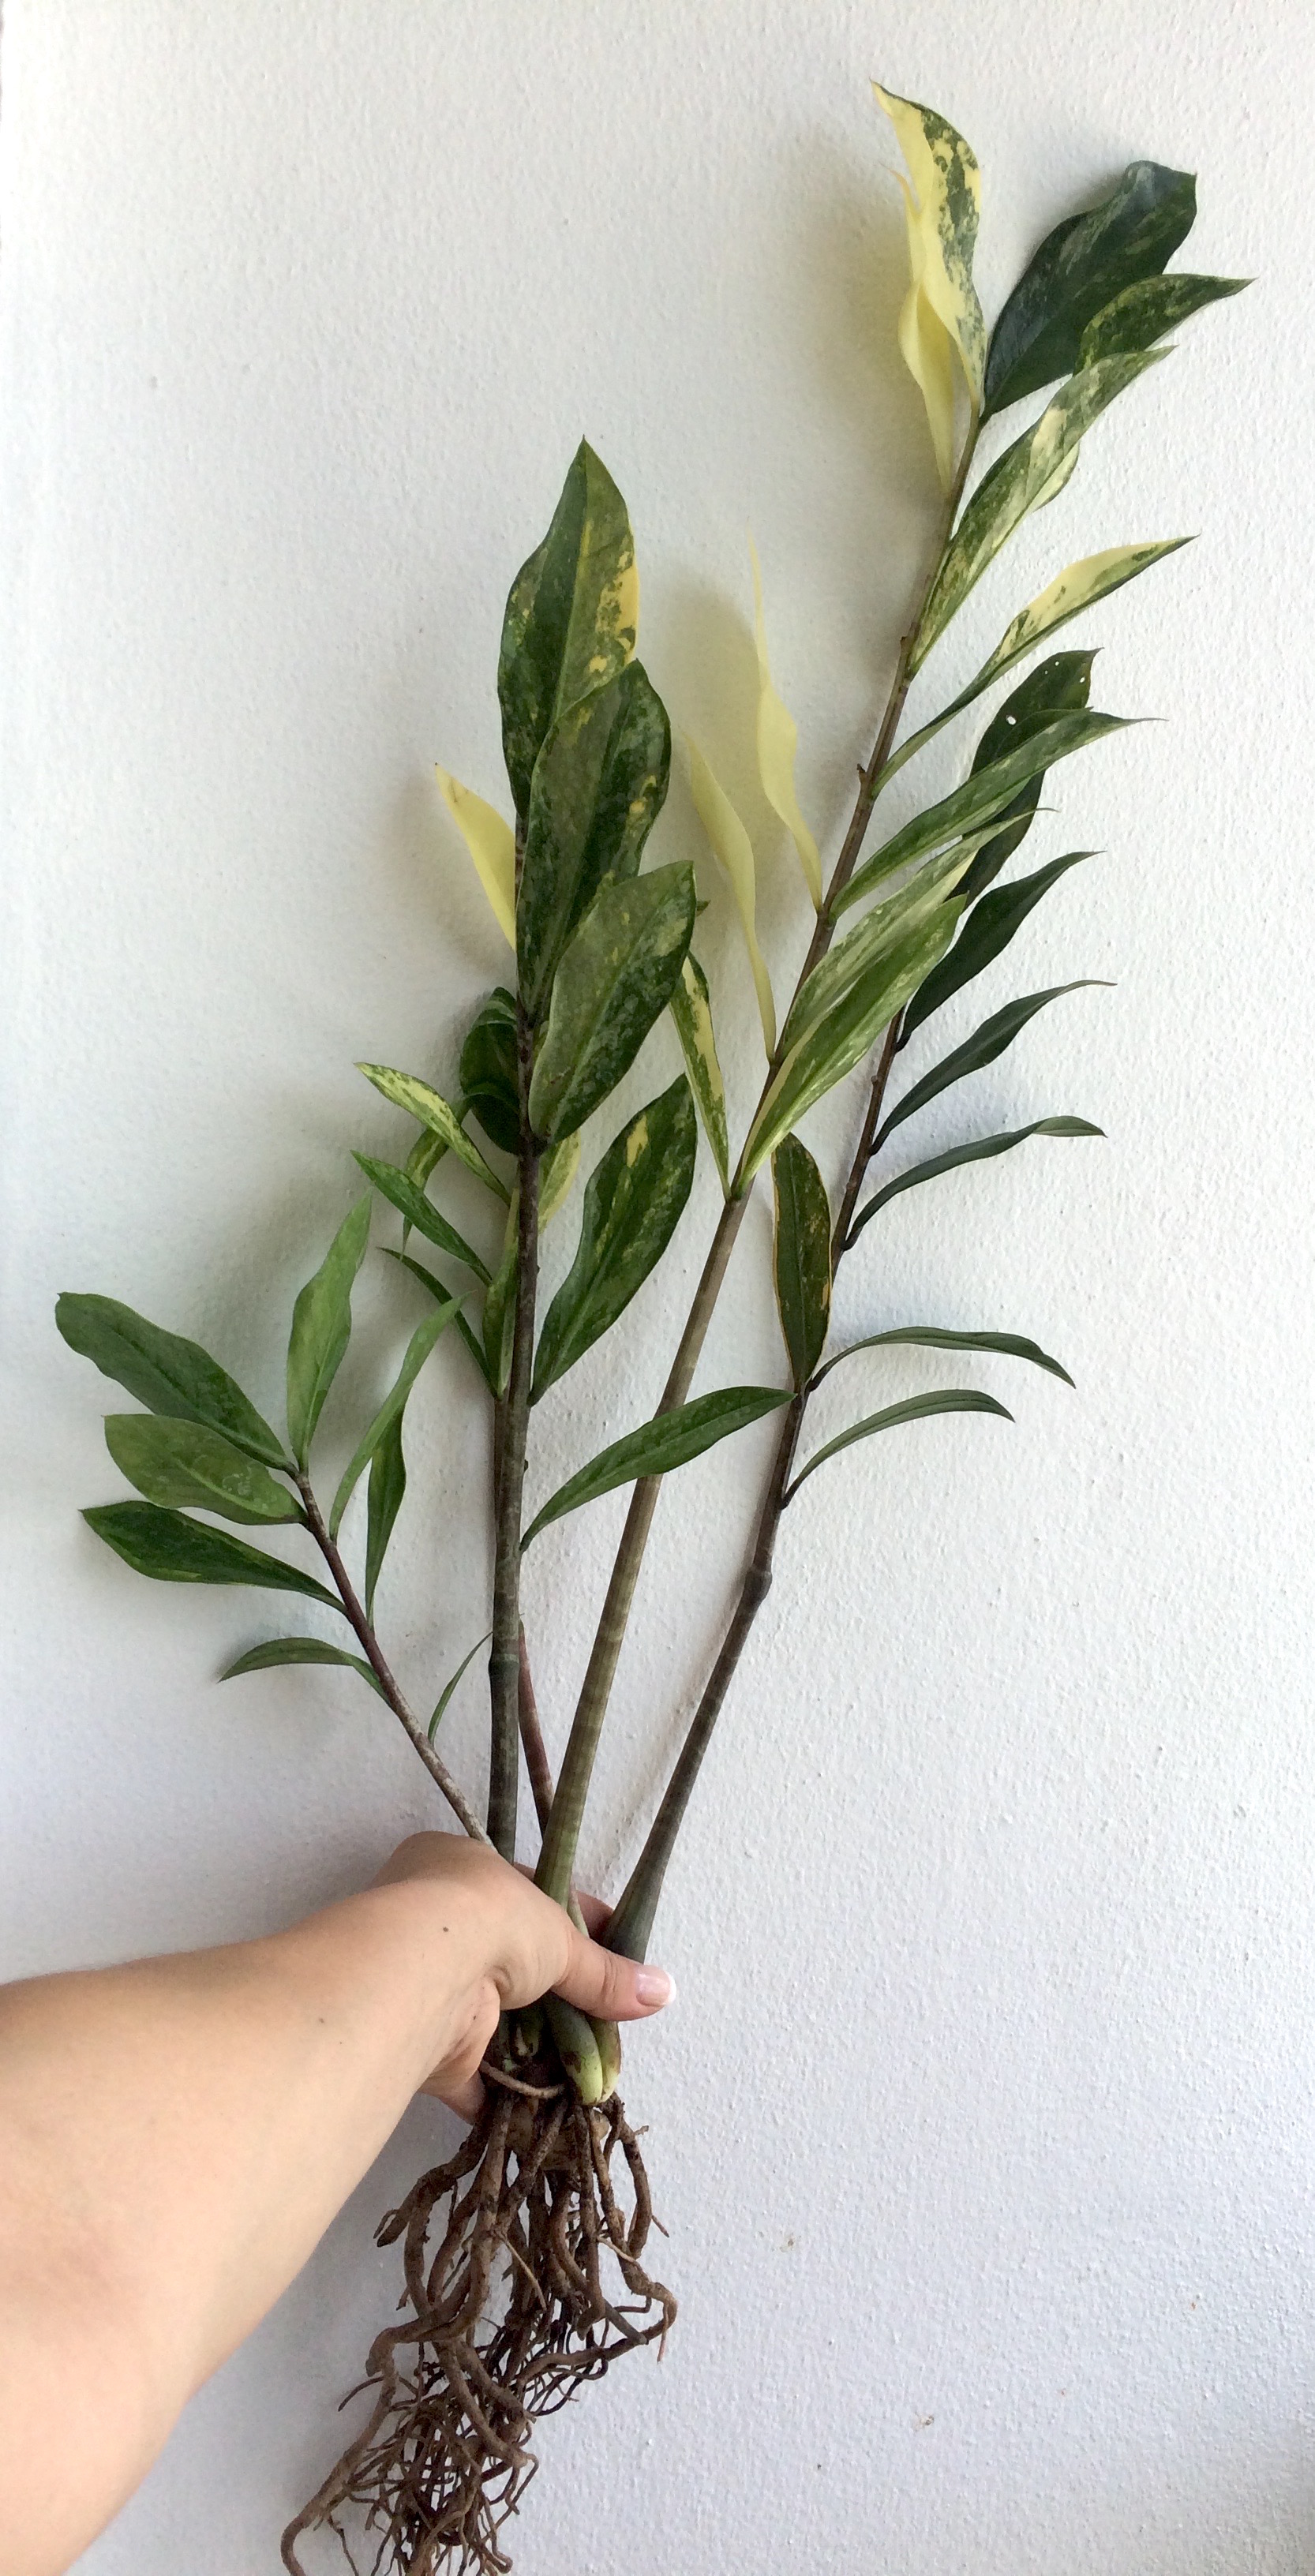 Zamioculcas zamiifolia white variegated (long leaf) / Замиокулькас замиелистный, белая вариегатность, длиннолистная форма  80-150